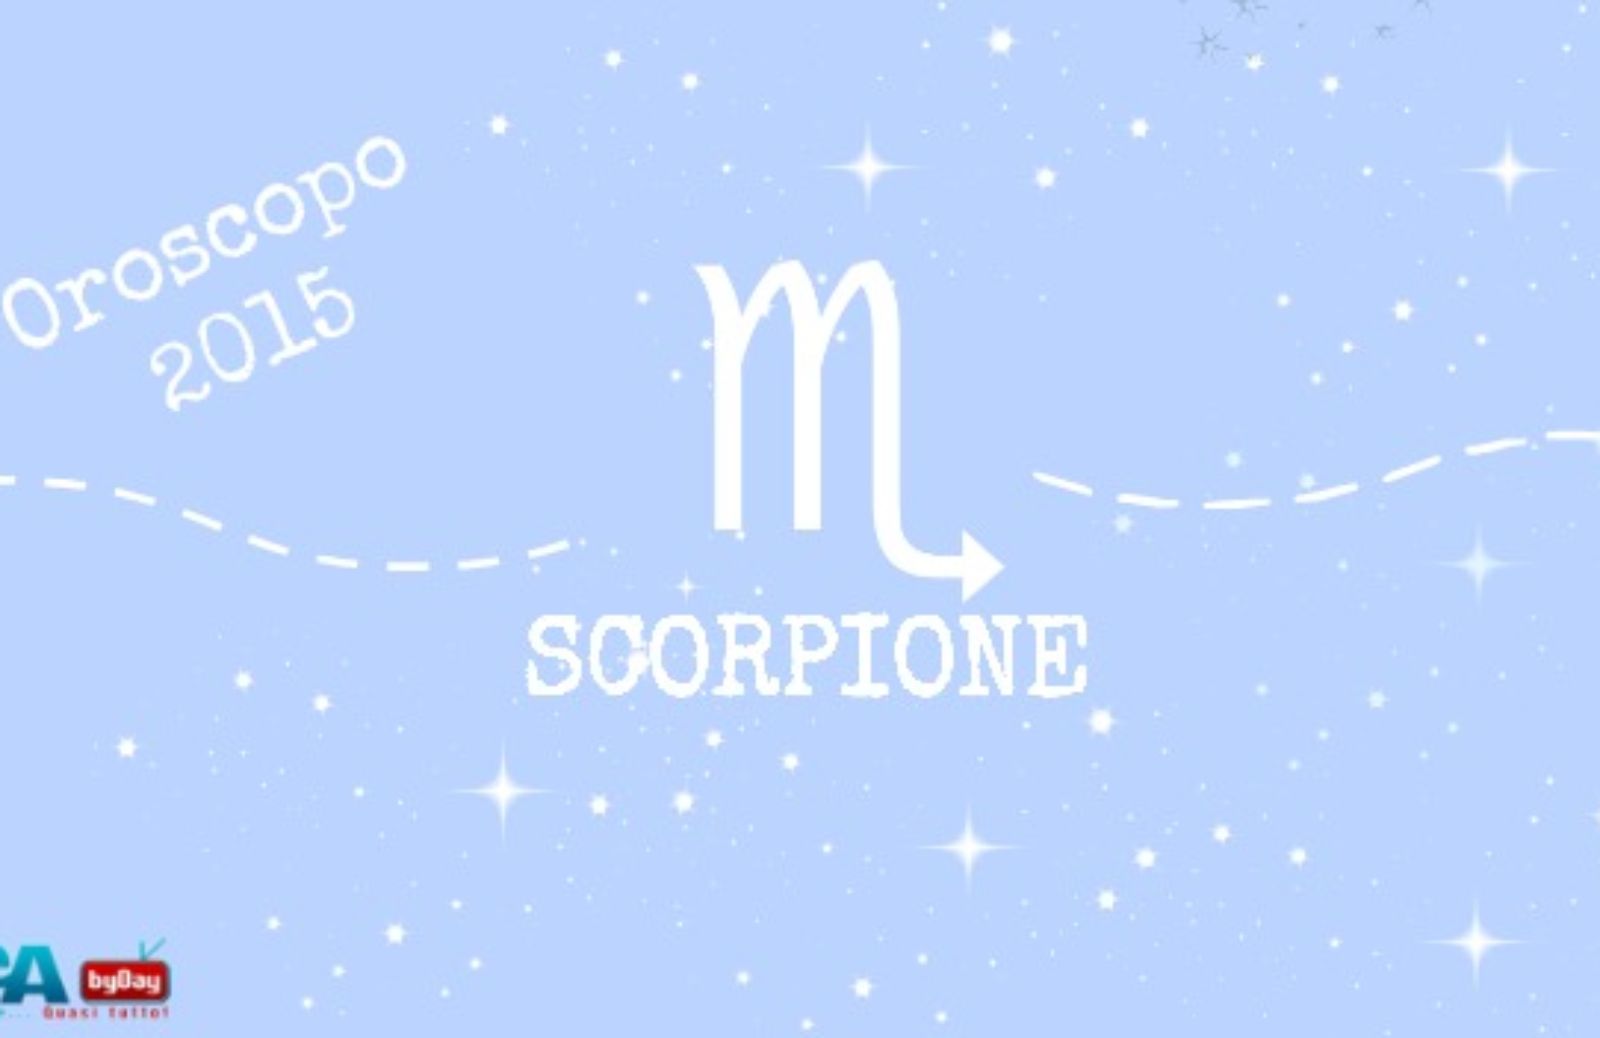 Oroscopo 2015: Scorpione